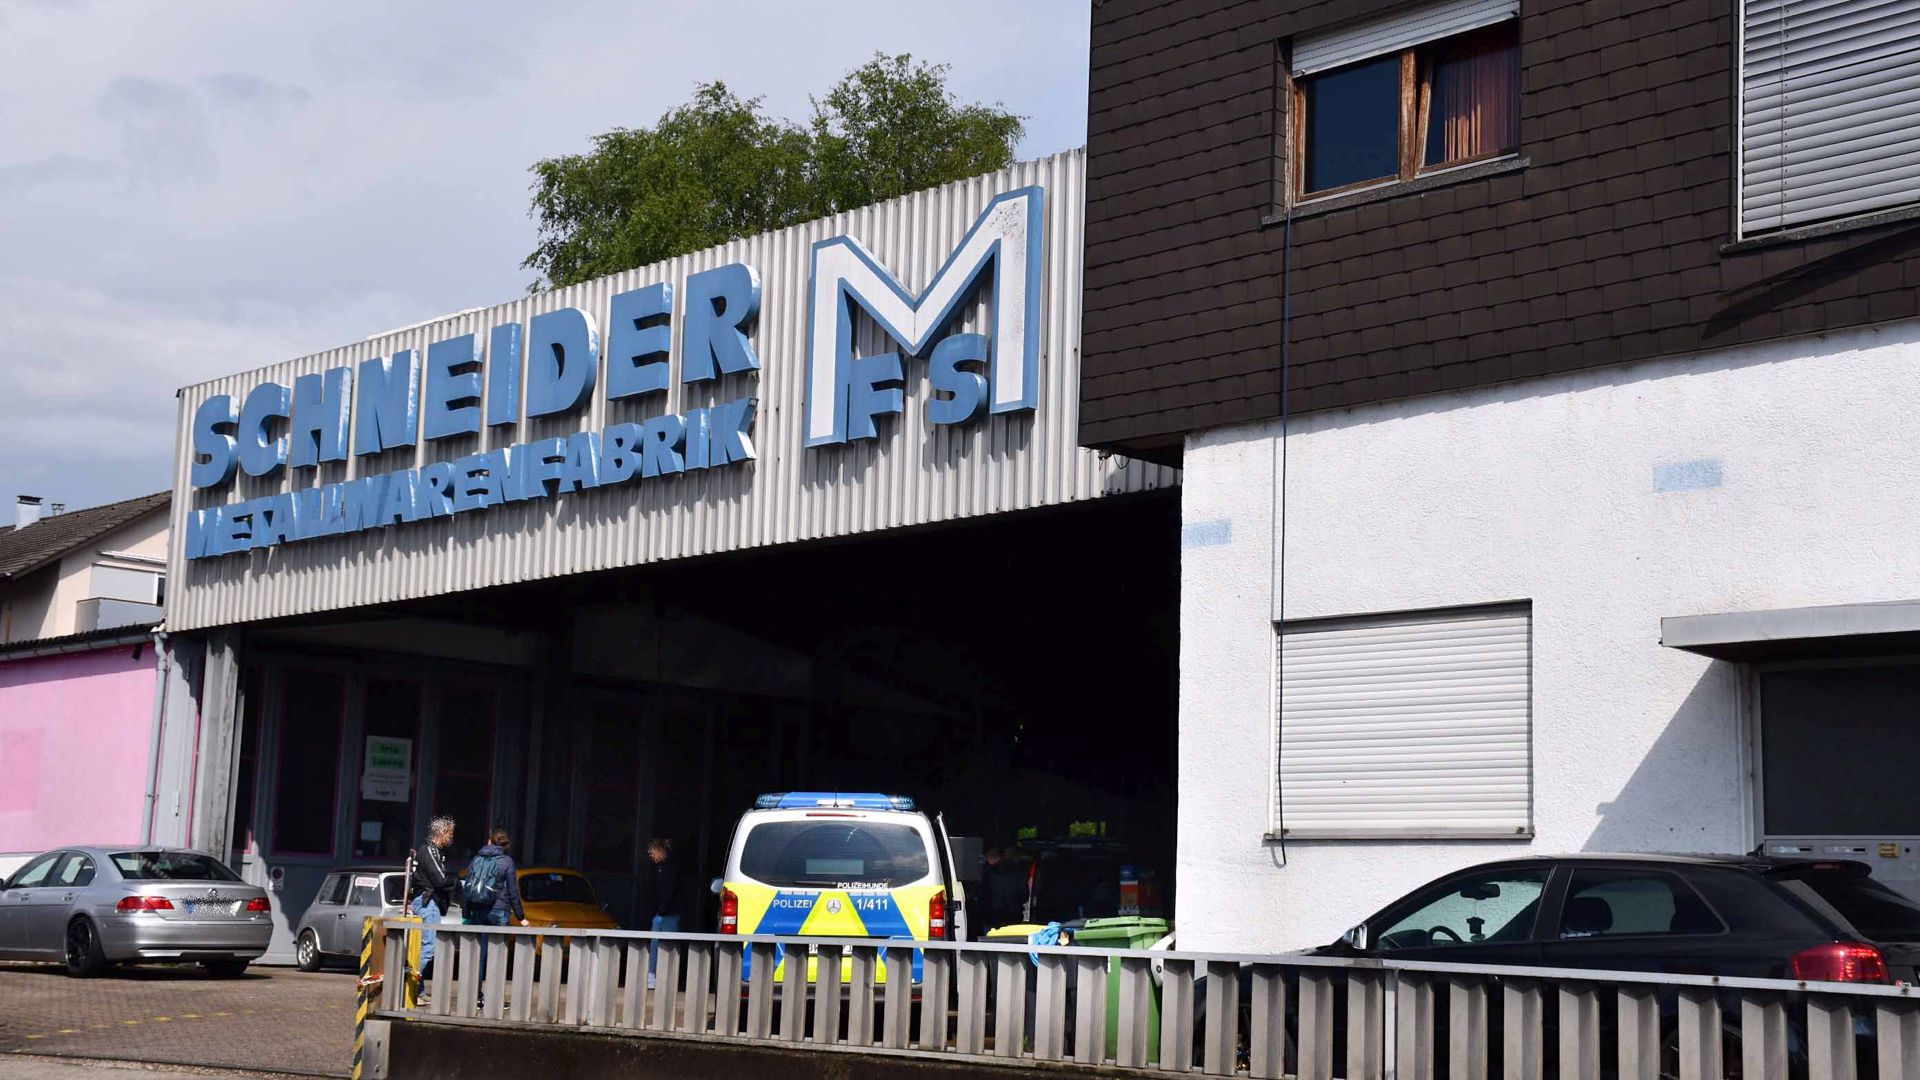 Im Rahmen einer Drogenrazzia hat die Polizei am Dienstag eine Autowerkstatt in den ehemaligen Räumen einer Fabrik in Sinzheim durchsucht.